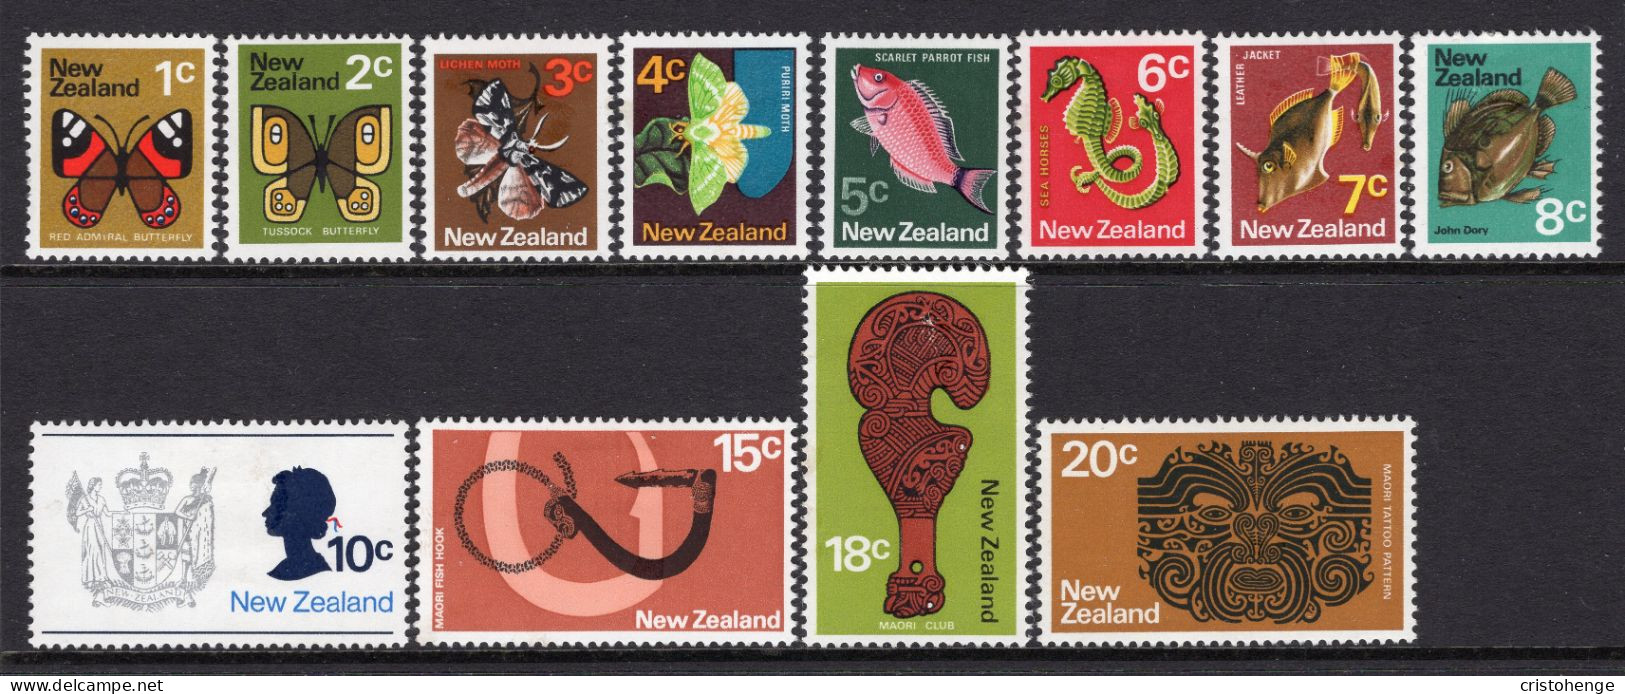 New Zealand 1973-76 Definitives - No Wmk. - Set HM (SG 1008-1020) - Nuevos